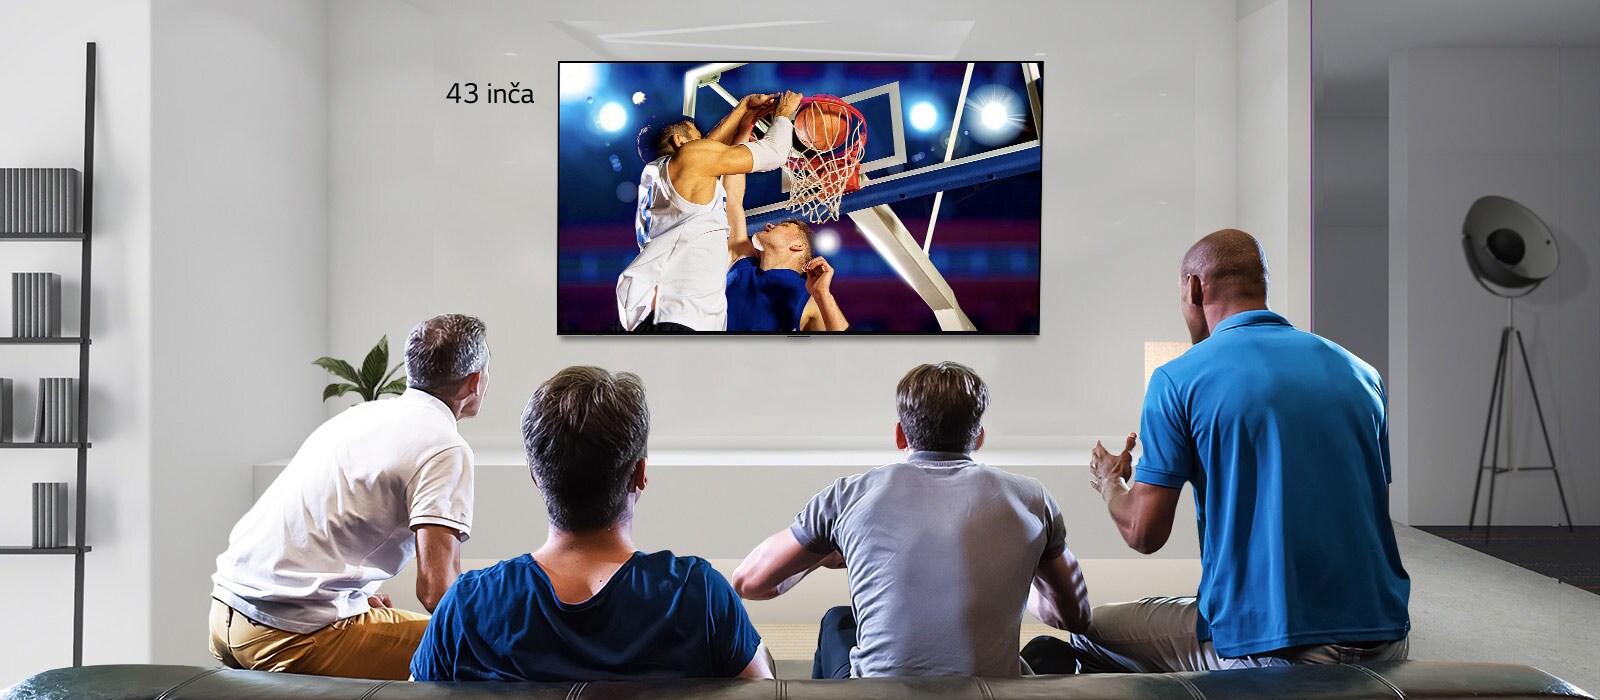 Prikaz stražnje strane televizora koji je montiran na zid, a na kojem se prikazuje košarkaška utakmica koju gledaju četvorica muškaraca. Pomicanjem slijeva nadesno prikazuje se razlika u veličini između zaslona od 43 inča i zaslona od 86 inča.